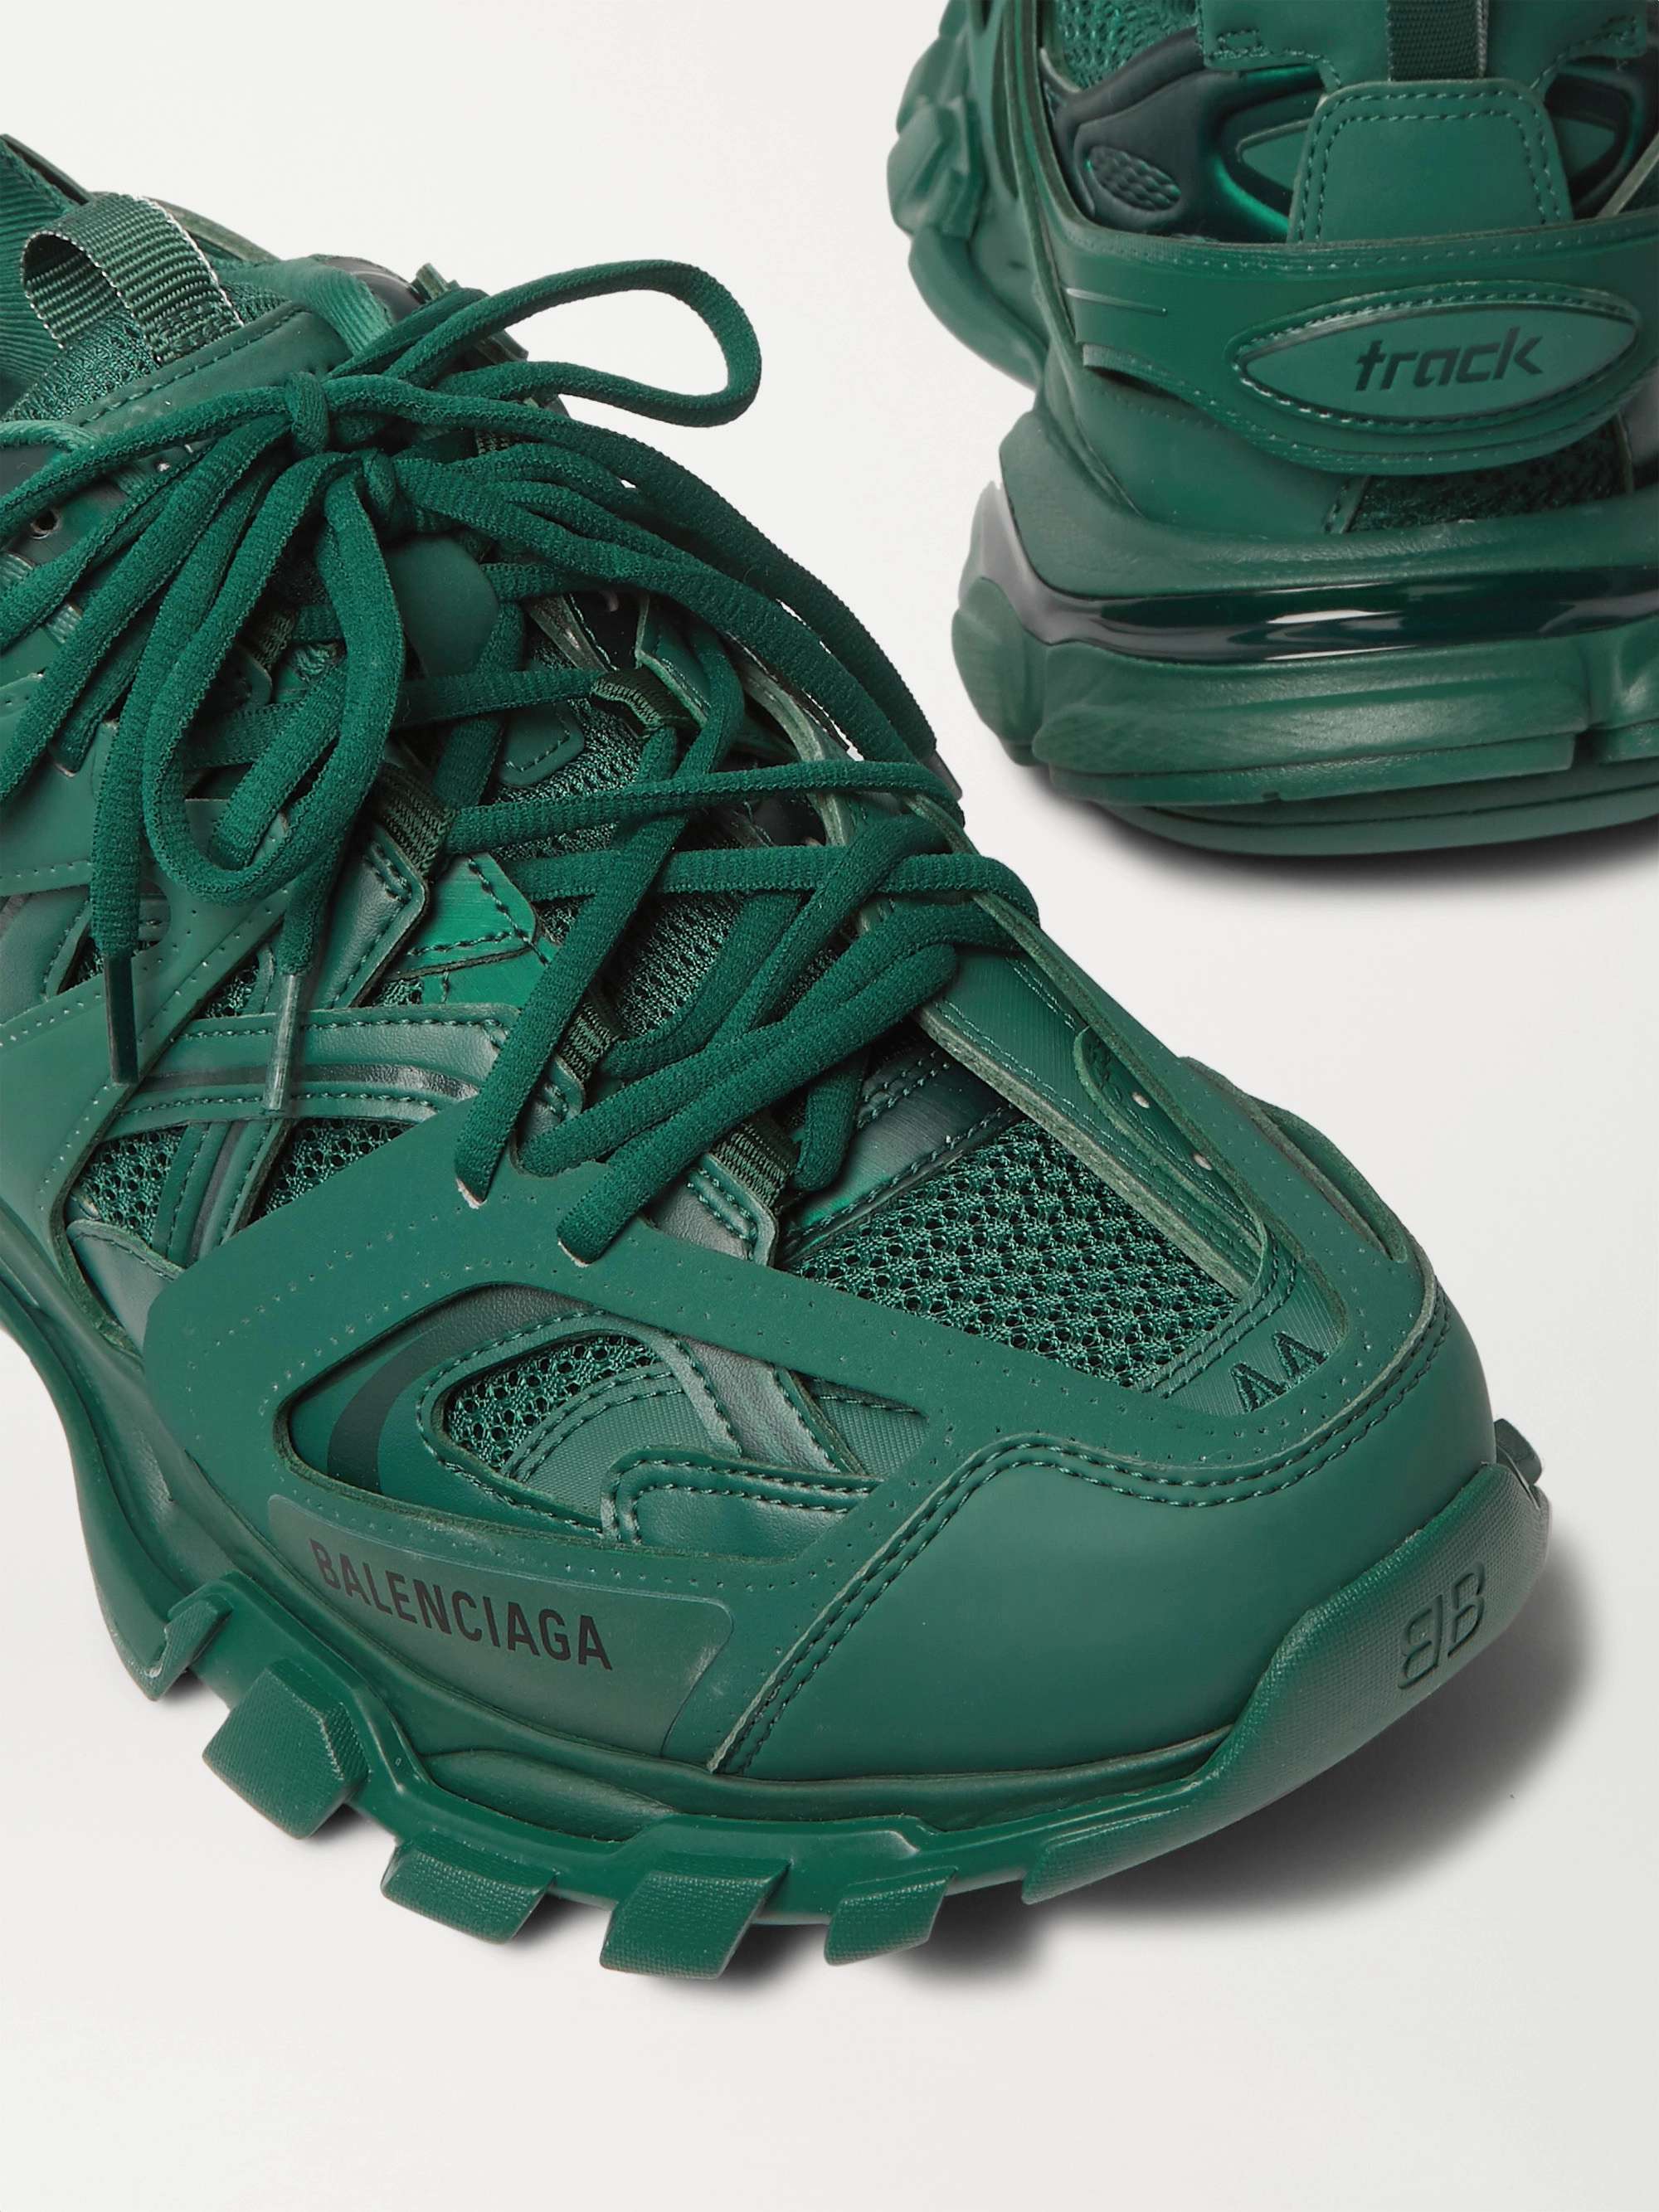 Dark green Track Nylon, Mesh and Rubber Sneakers | BALENCIAGA | MR PORTER